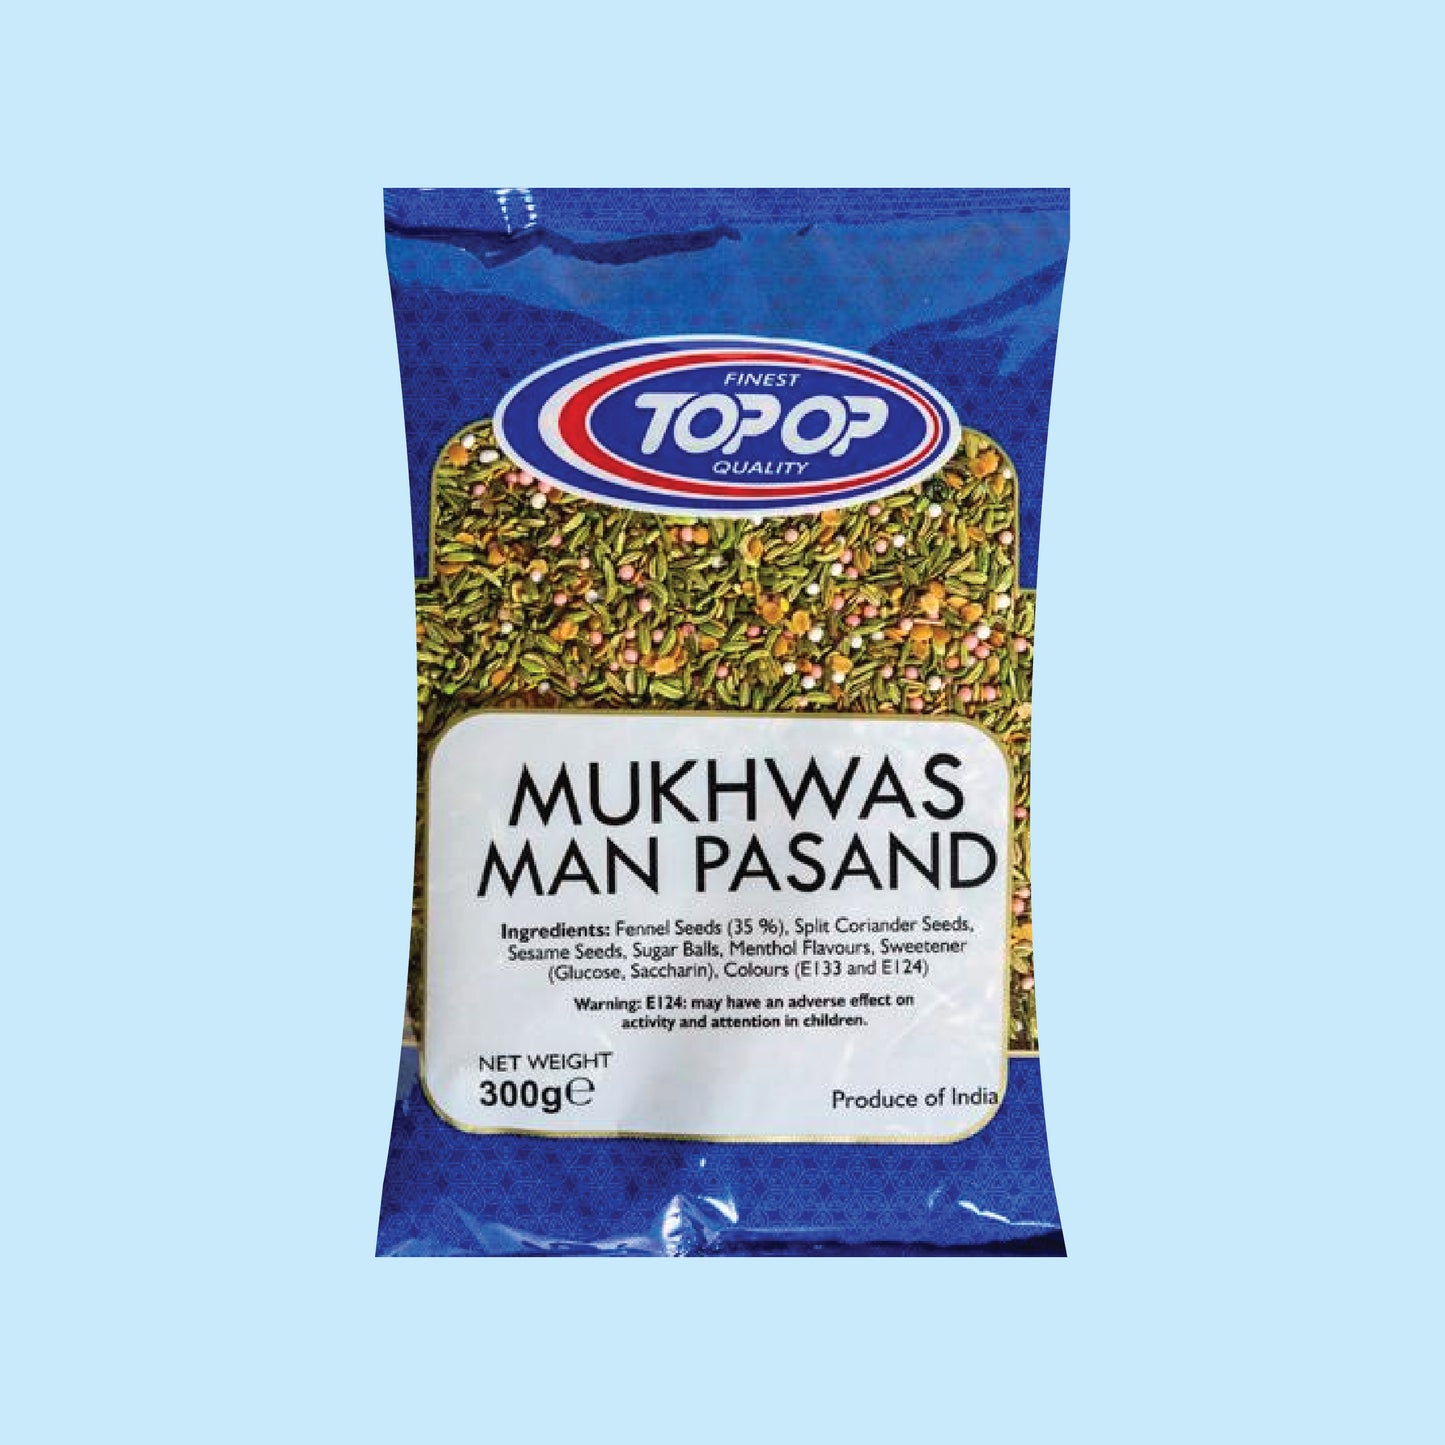 Top-Op Manpasand Mukhwas